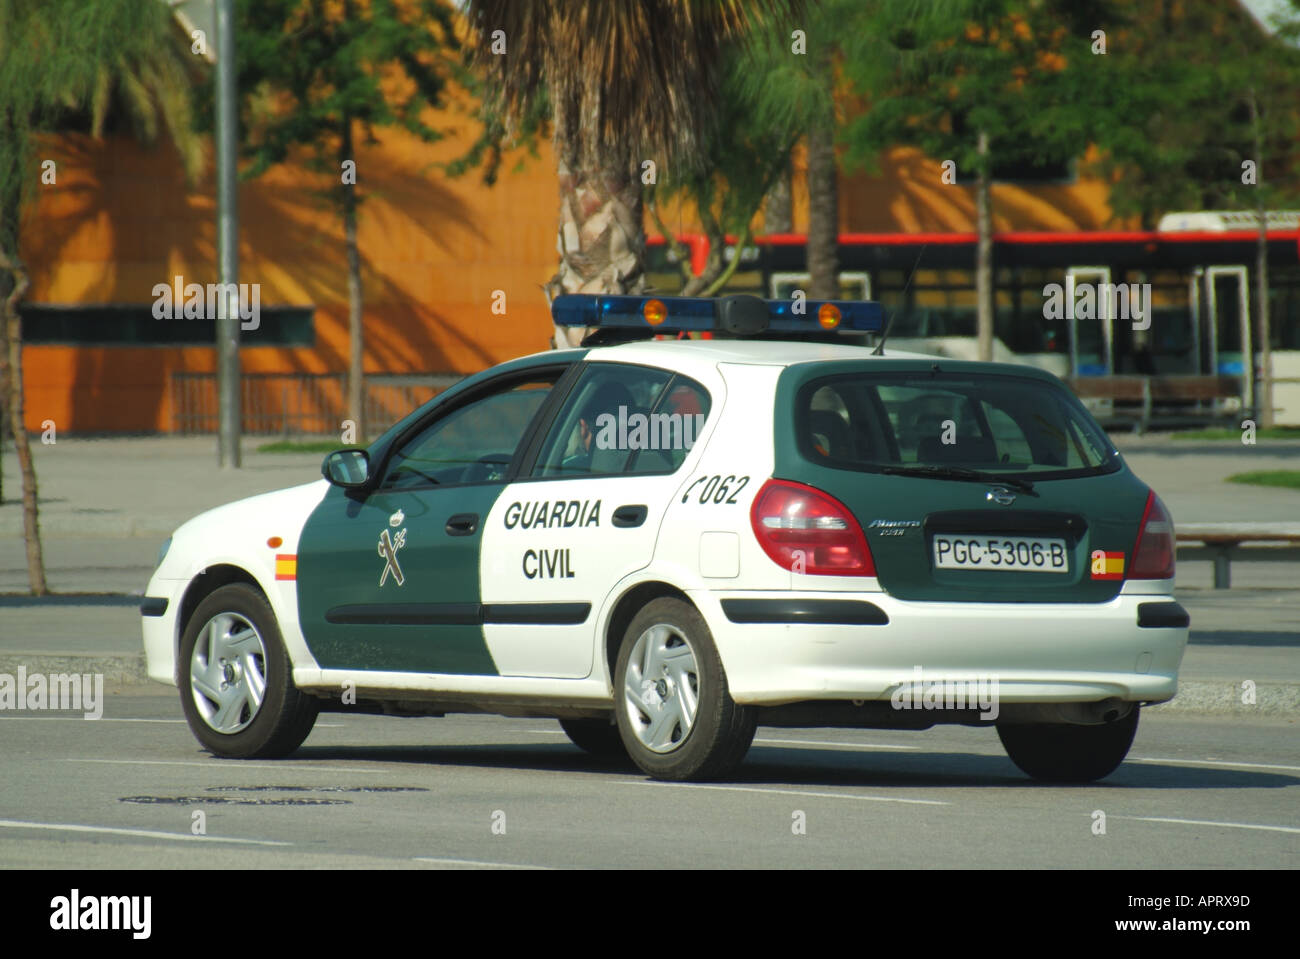 Barcelona Guardia Civil police car on patrol in the port area Stock Photo